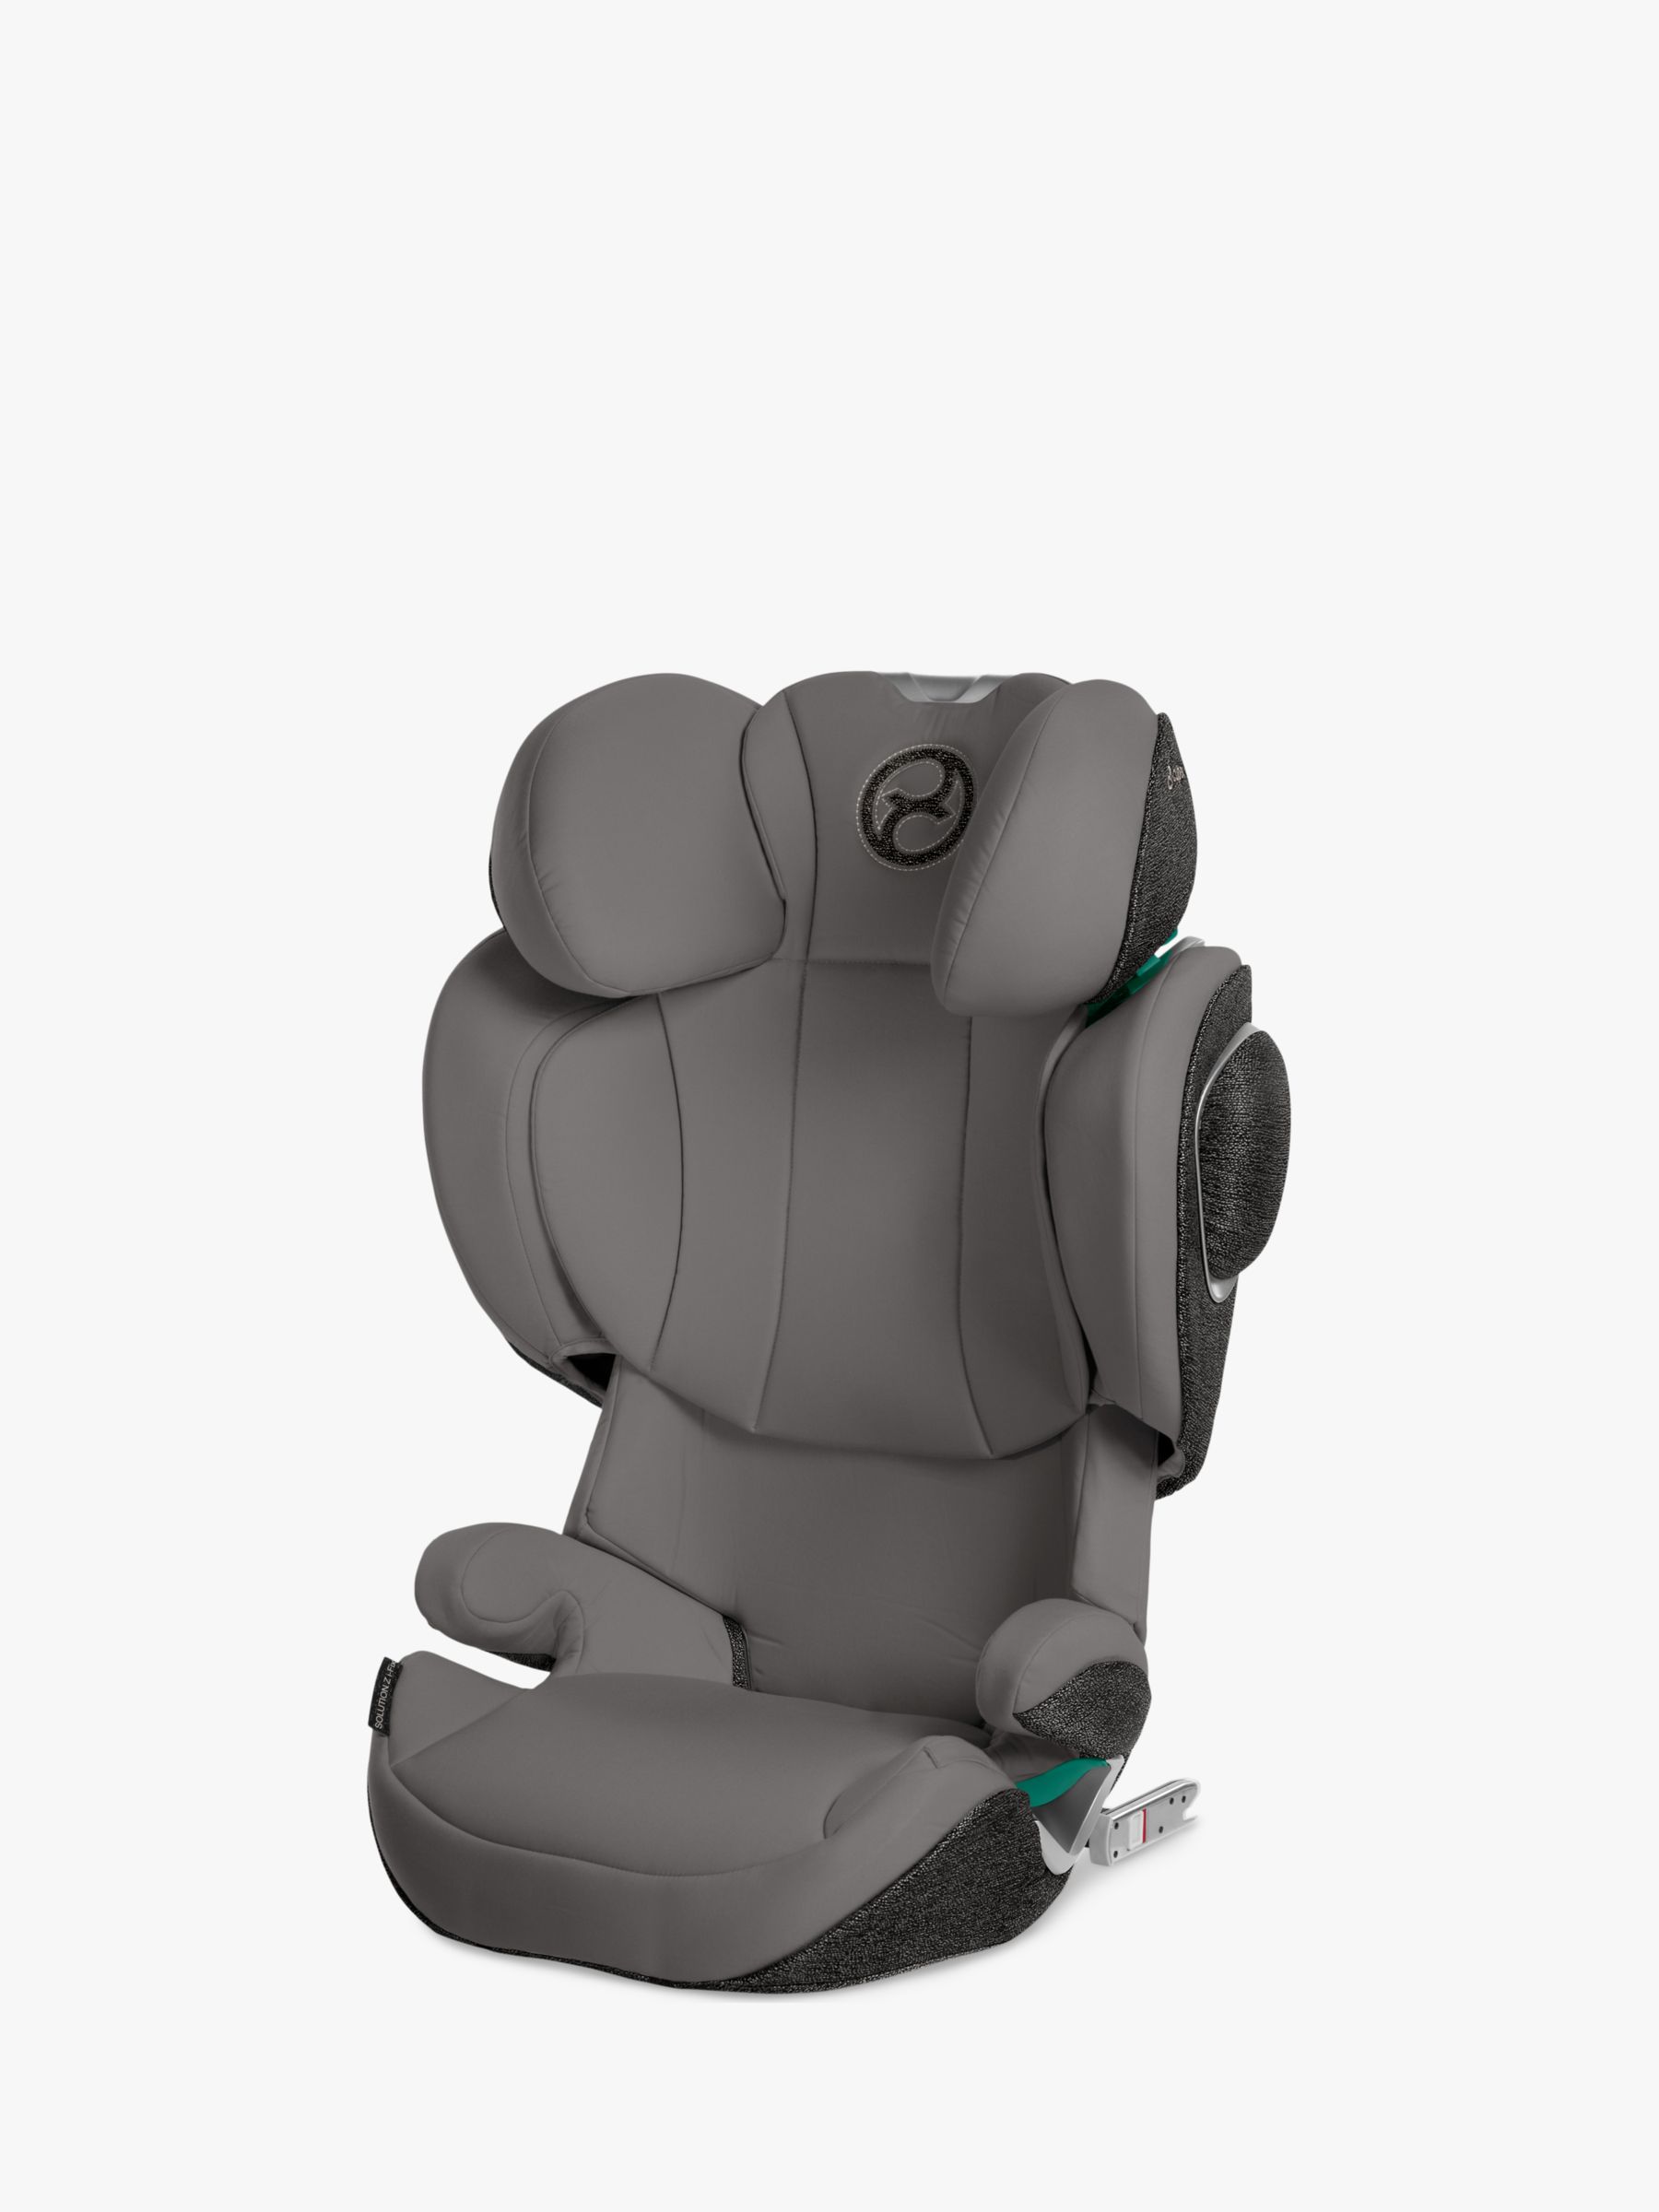 Cybex Solution Z i-Fix R129 Car Seat